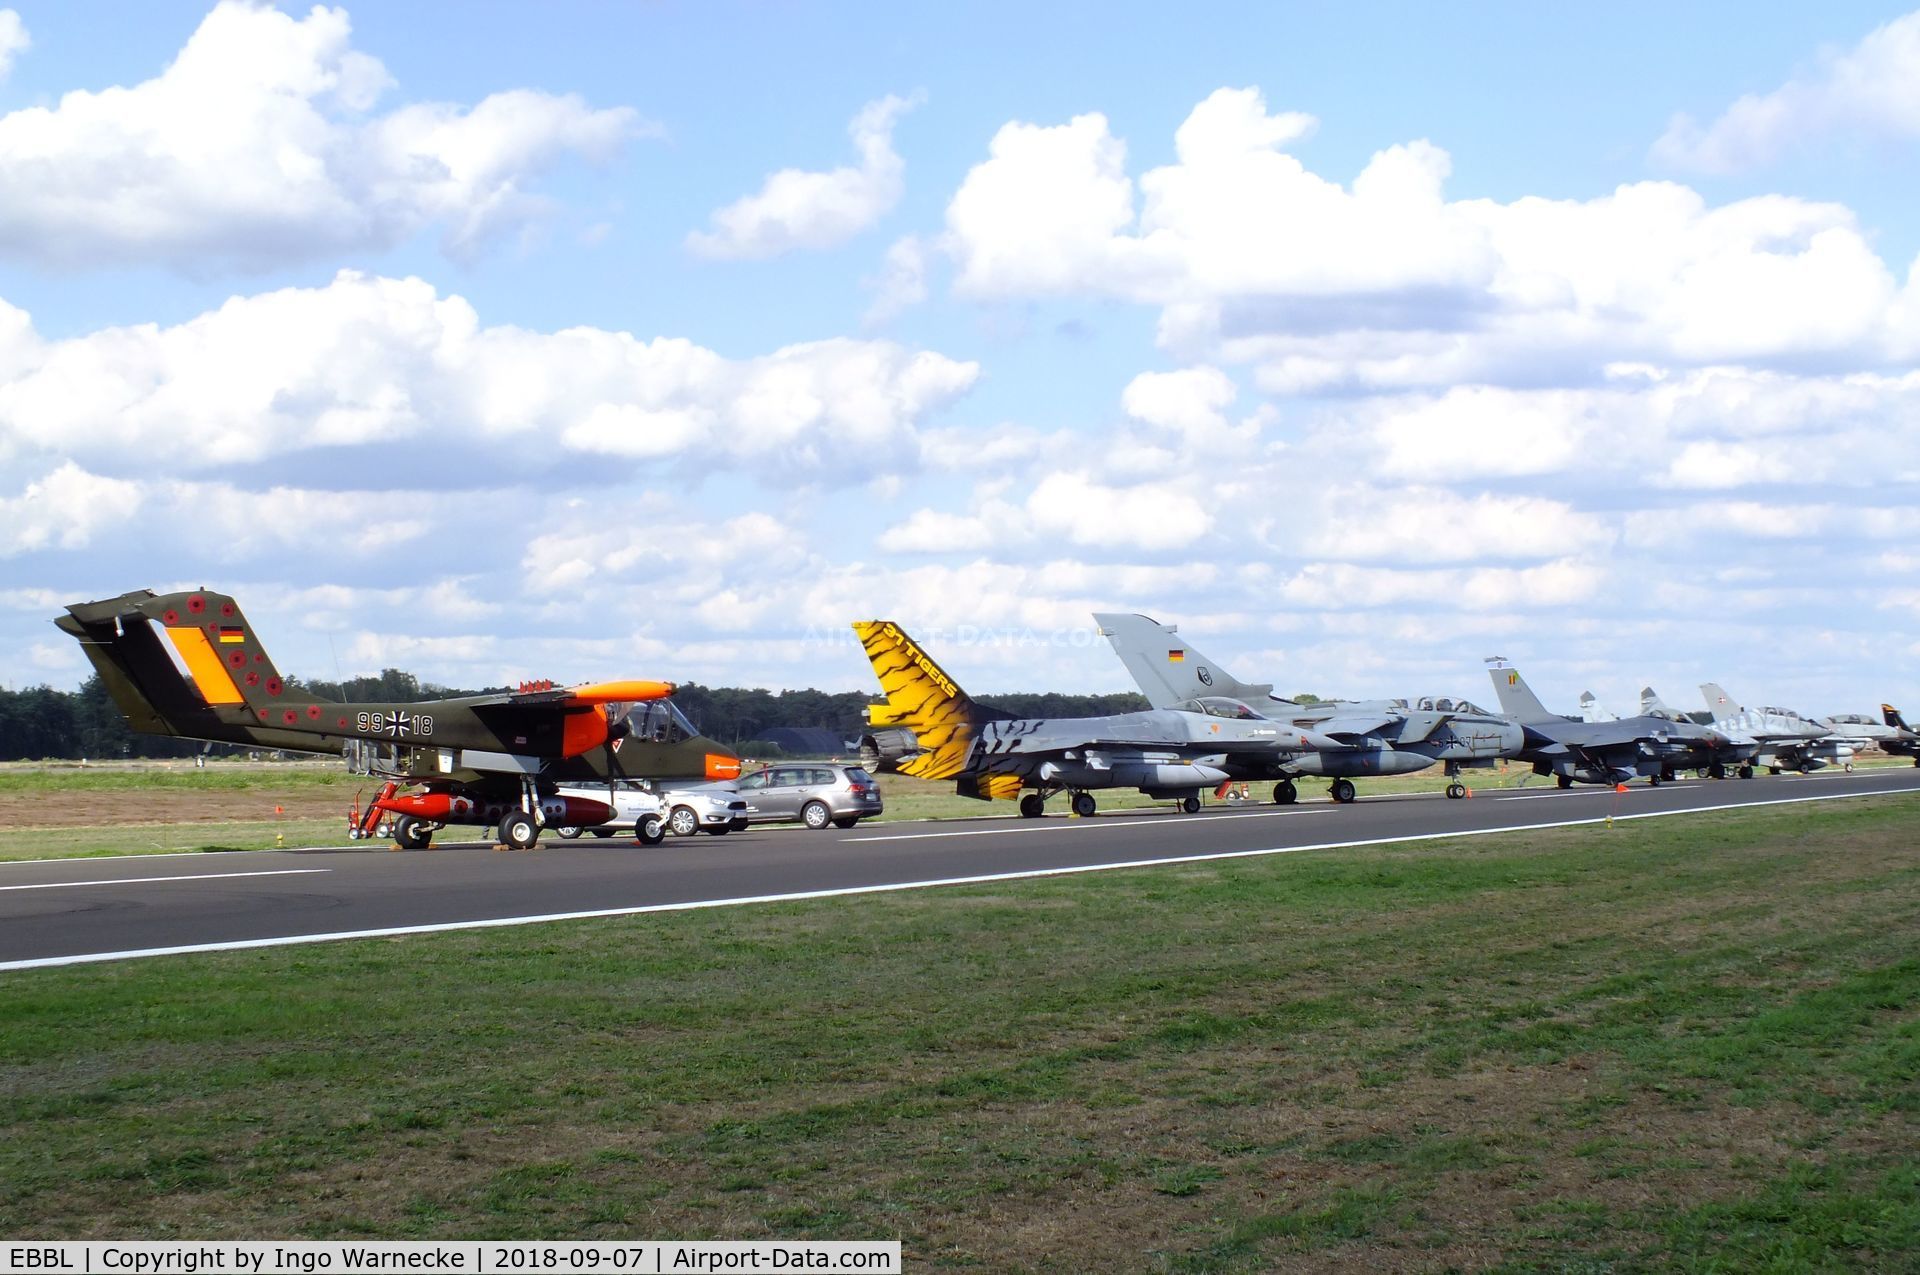 Kleine Brogel Air Base Airport, Kleine Brogel Belgium (EBBL) - part of the flightline display at the 2018 BAFD Spottersday at Kleine Brogel airbase